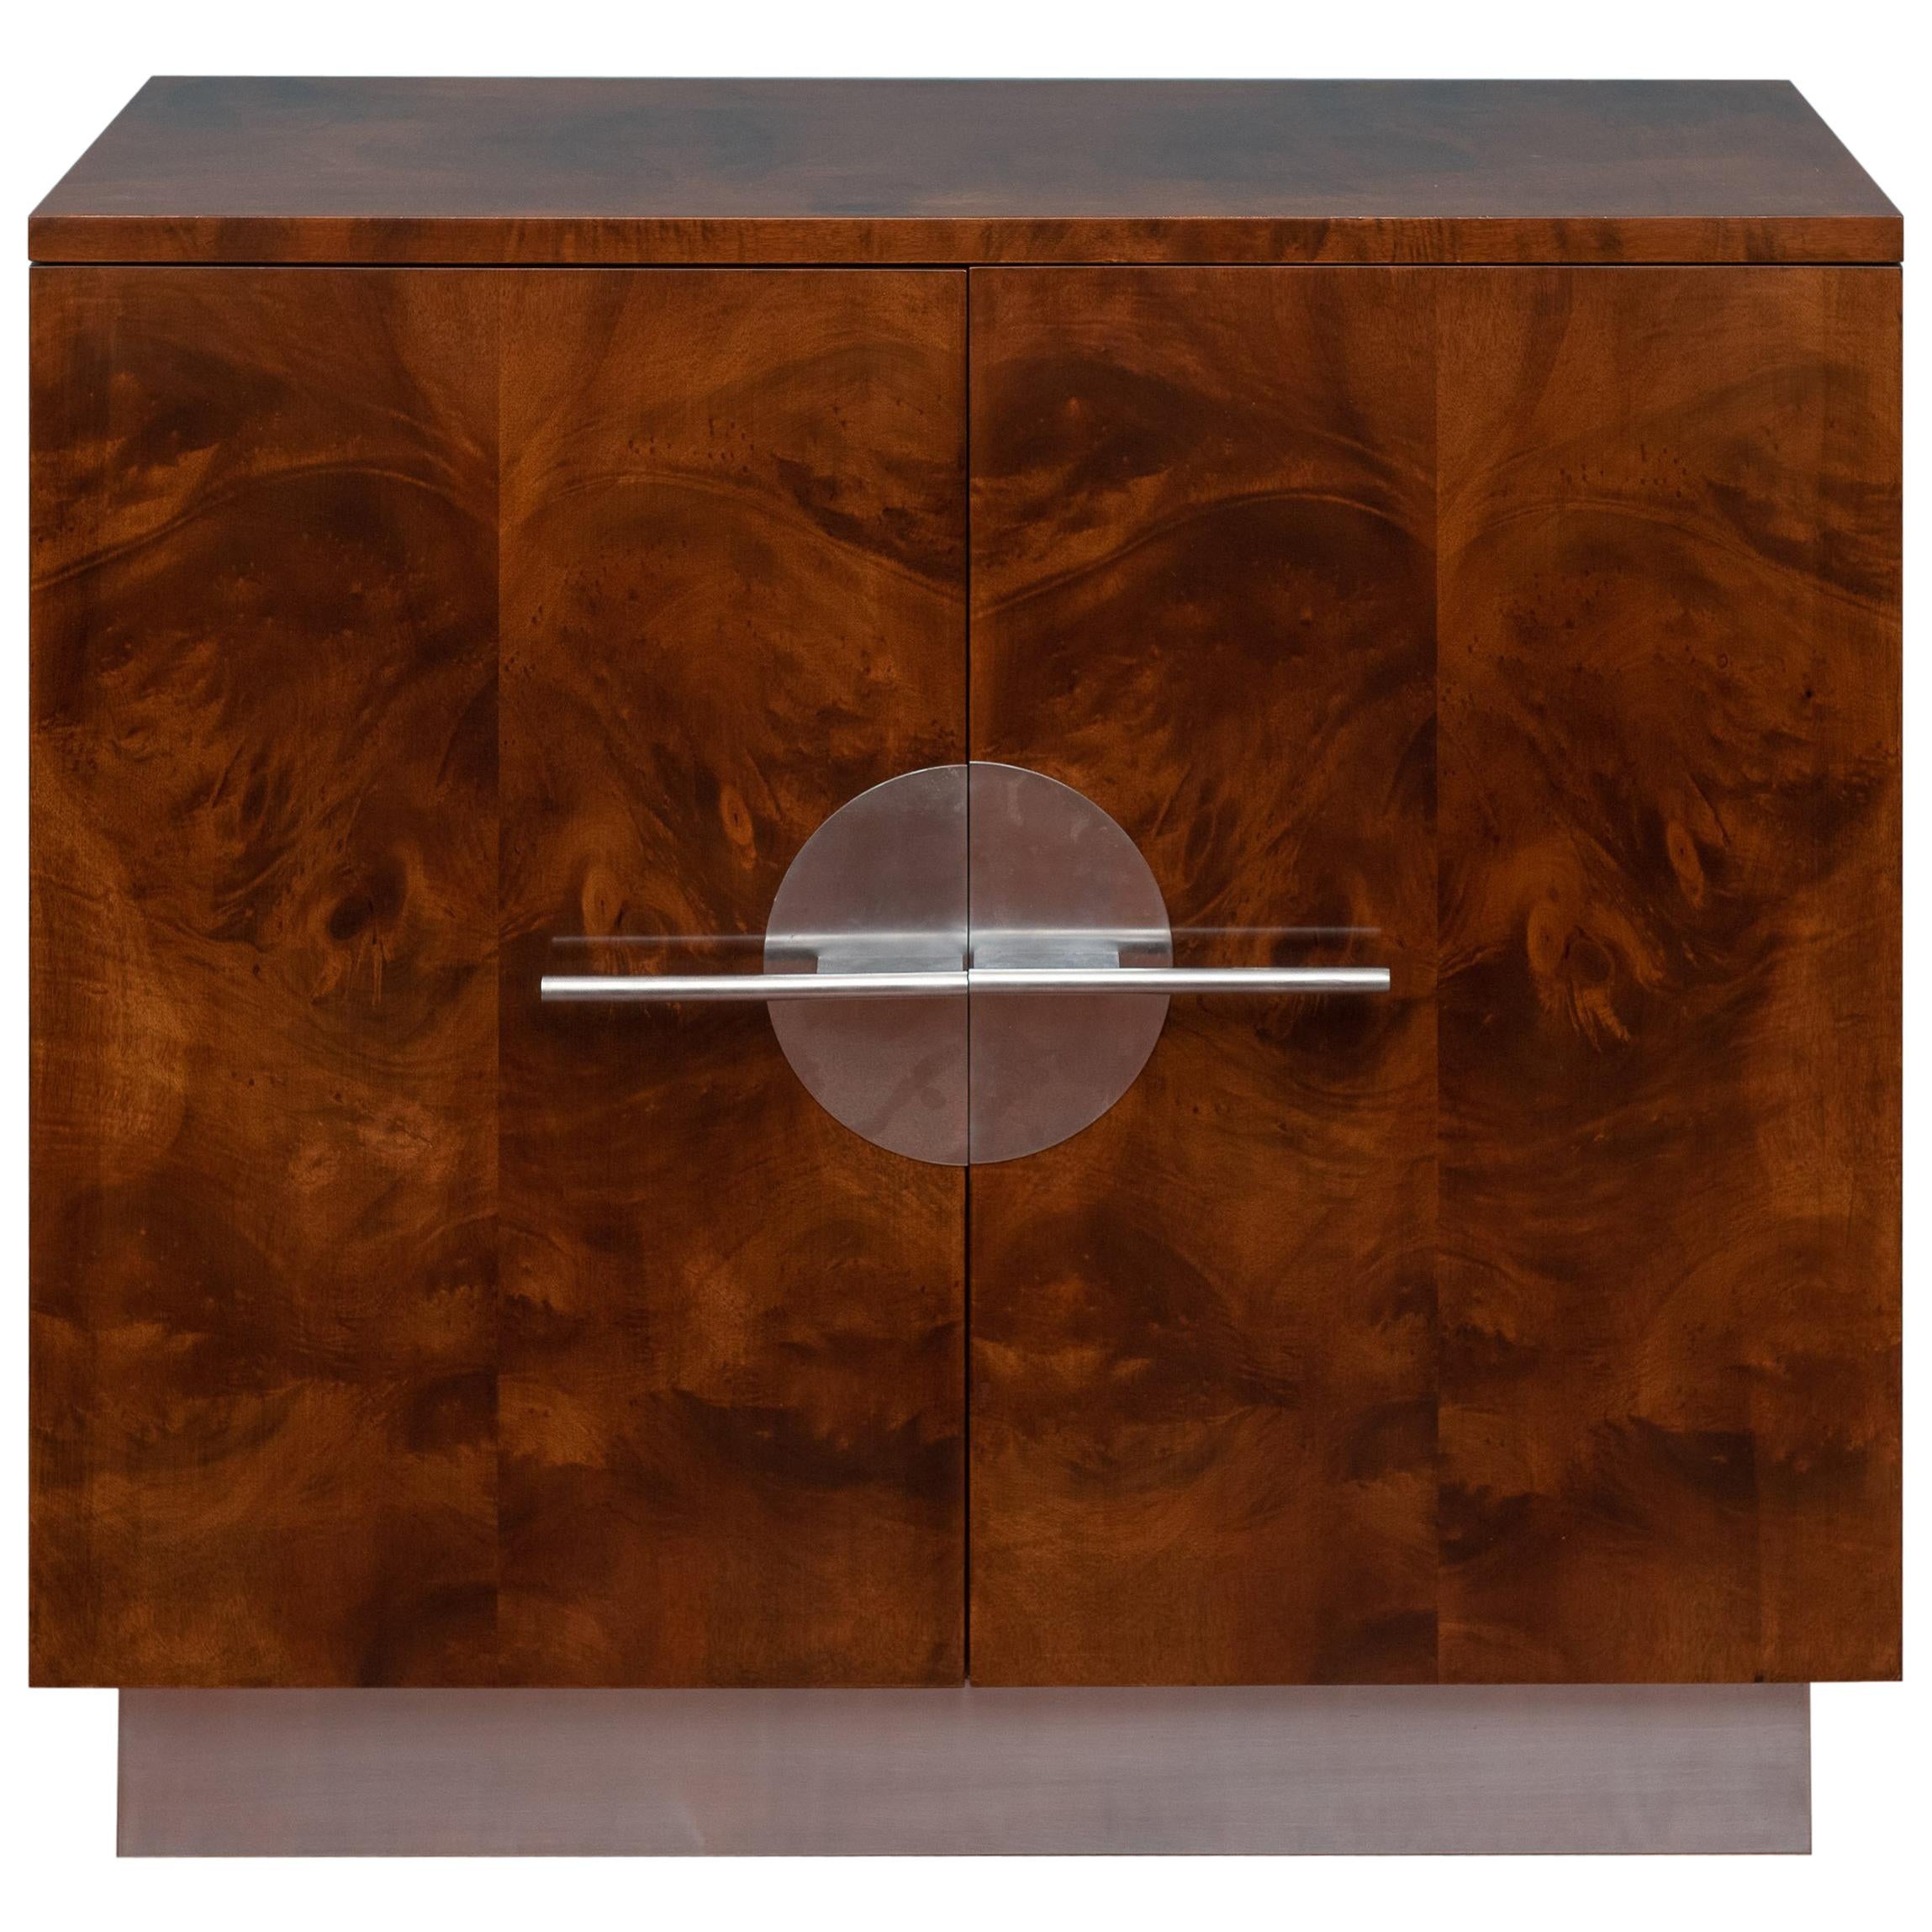 Streamline Modern Cabinet by Walter Dorwin Teague For Sale